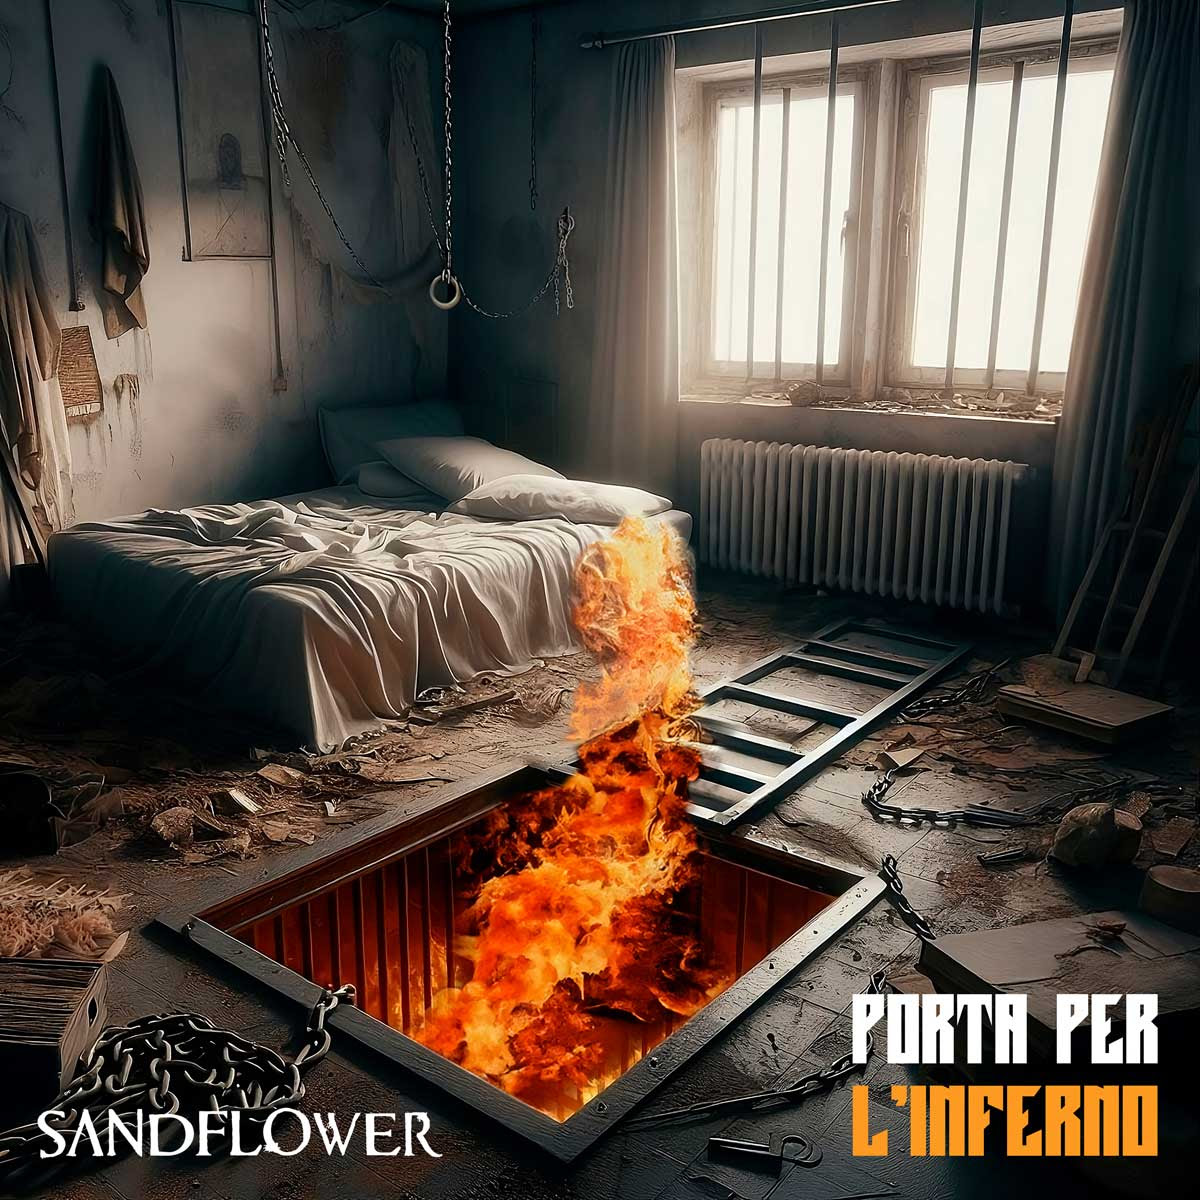 SANDFLOWER: da venerdì 17 maggio disponibile in radio e in digitale “PORTA PER L’INFERNO” il nuovo singolo